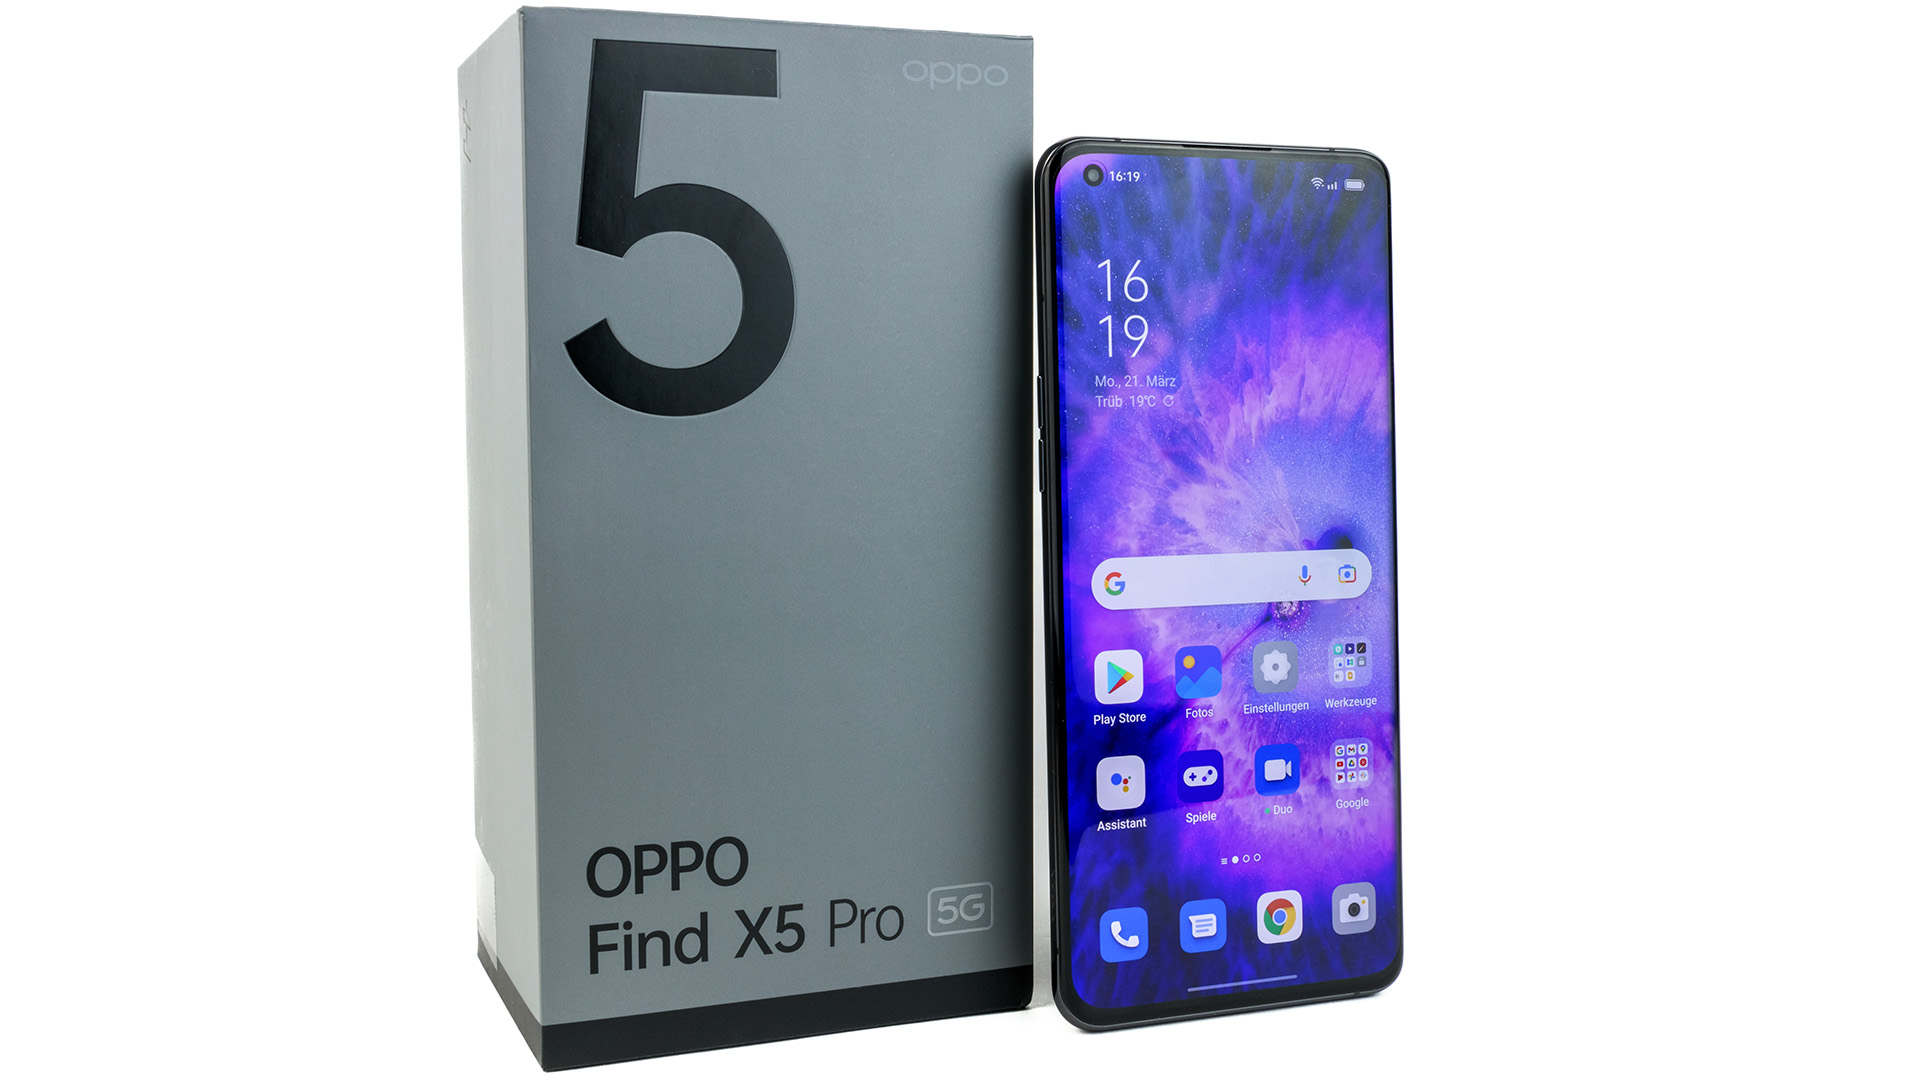 Oppo Find X5 Pro là một trong những chiếc smartphone đáng mua nhất hiện nay. Xem những đánh giá để biết thêm về hiệu suất, camera và thiết kế của sản phẩm.